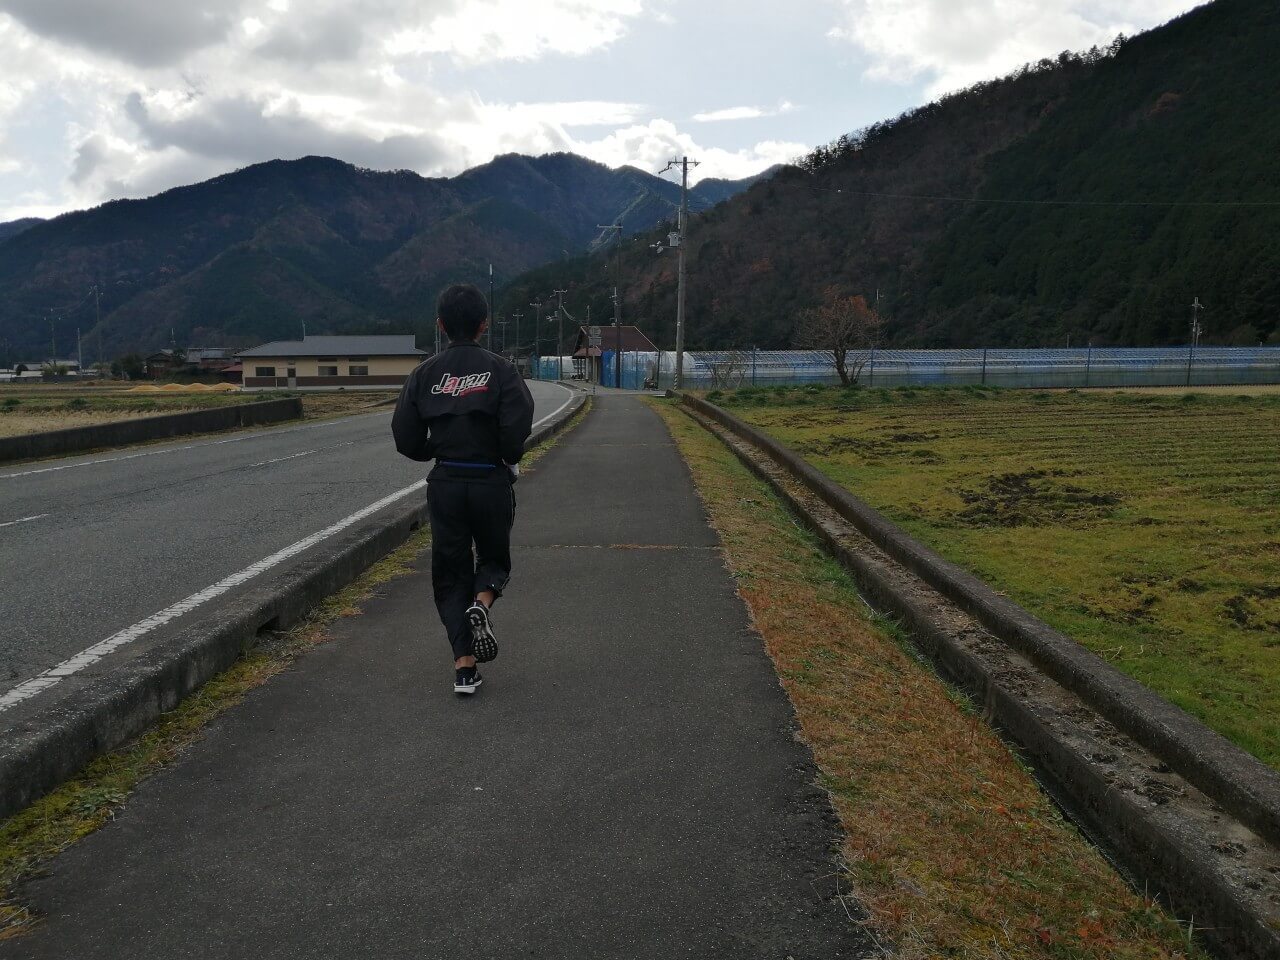 ウルトラ フルマラソン強化合宿の開催が決定 1 15 16 千葉県 小谷修平のランニング講座